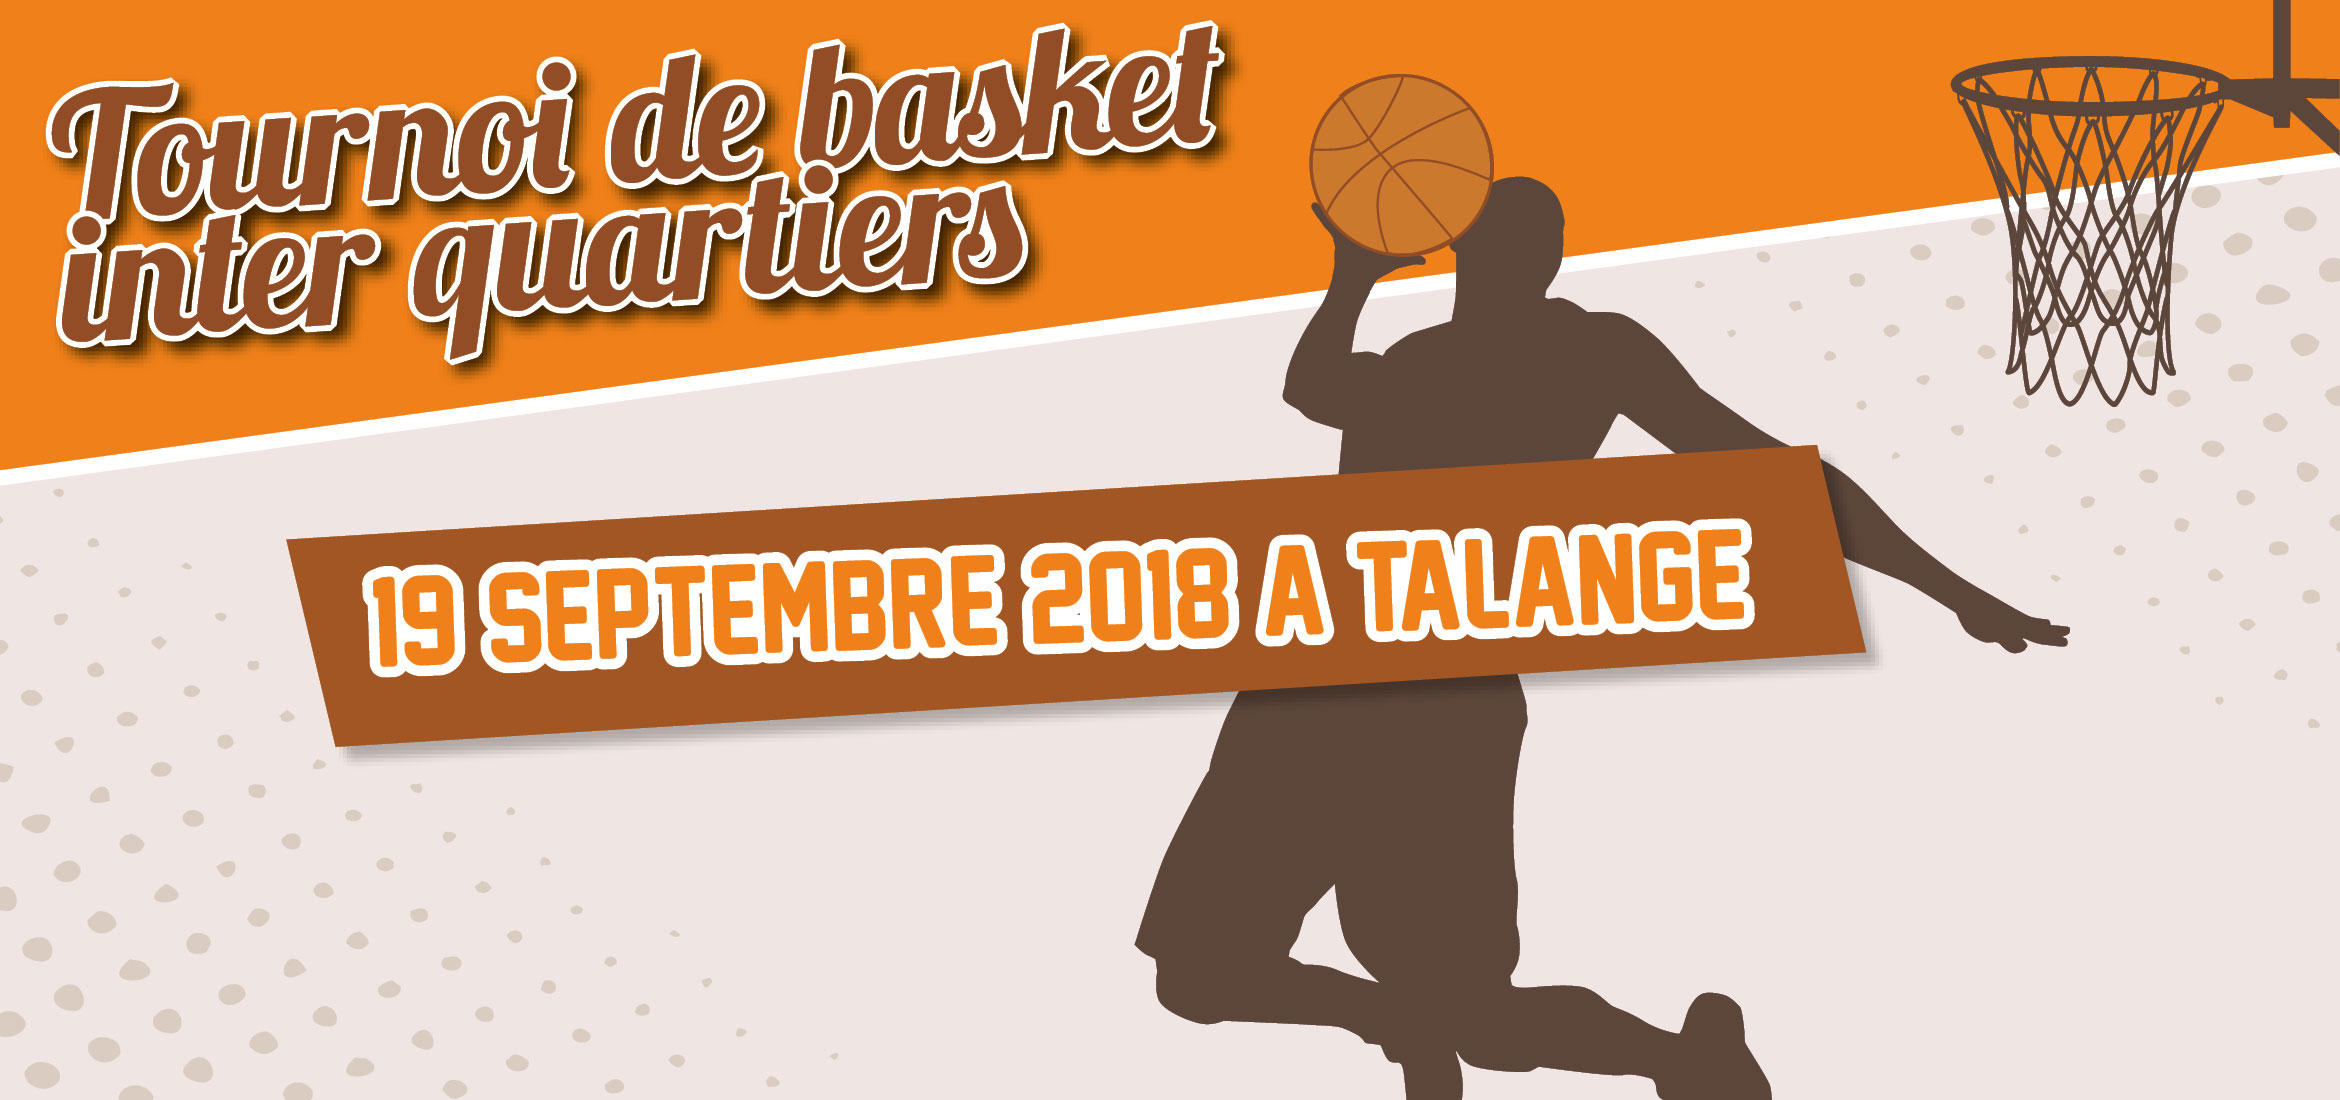 Tournoi de basket inter quartiers Moselis le 19 septembre à Talange